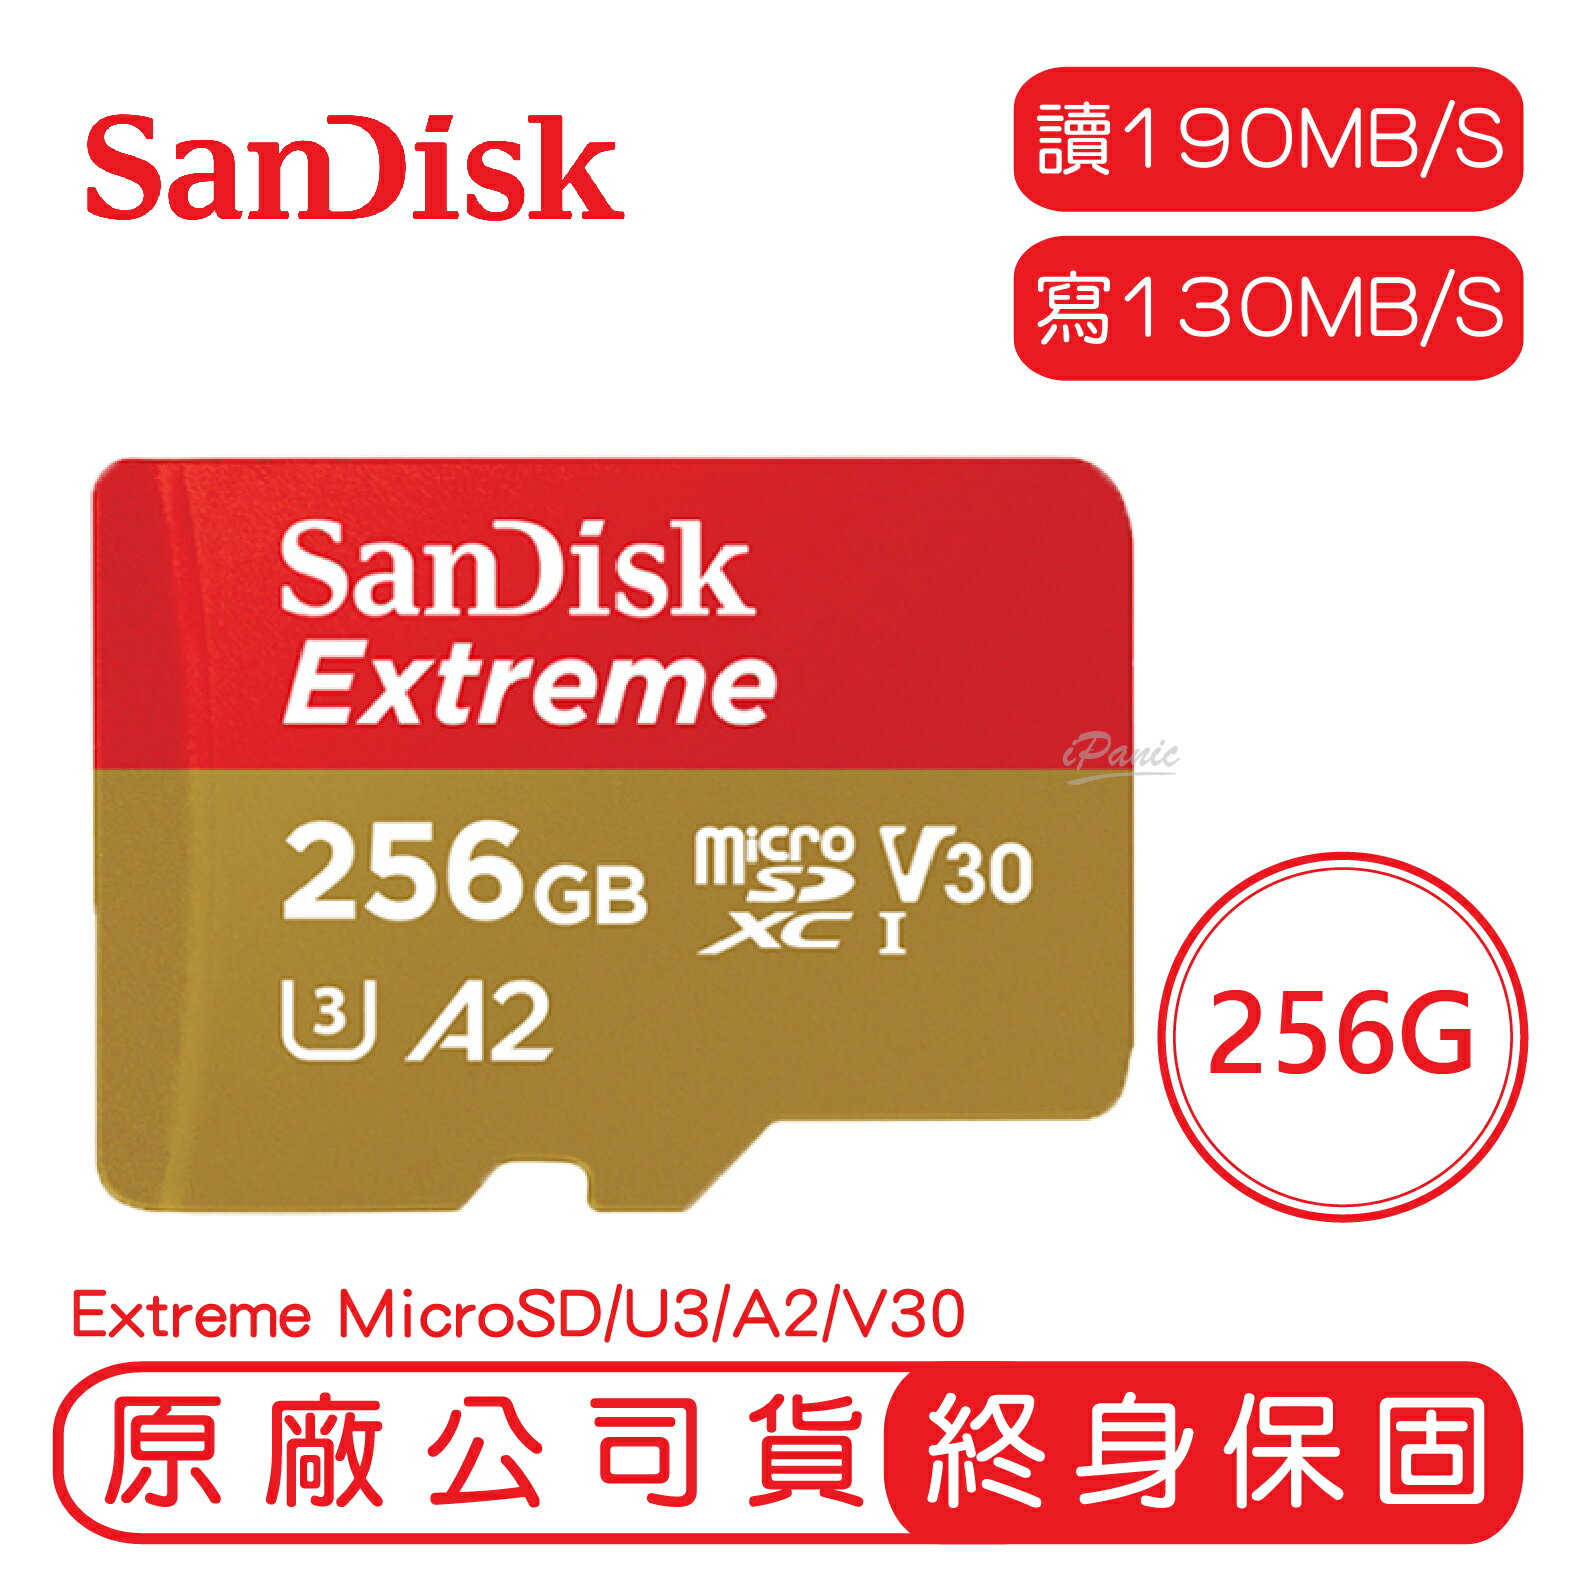 【9%點數】SANDISK 256G EXTREME microSD UHS-I A2 V30 記憶卡 256GB 讀190 寫130【APP下單9%點數回饋】【限定樂天APP下單】